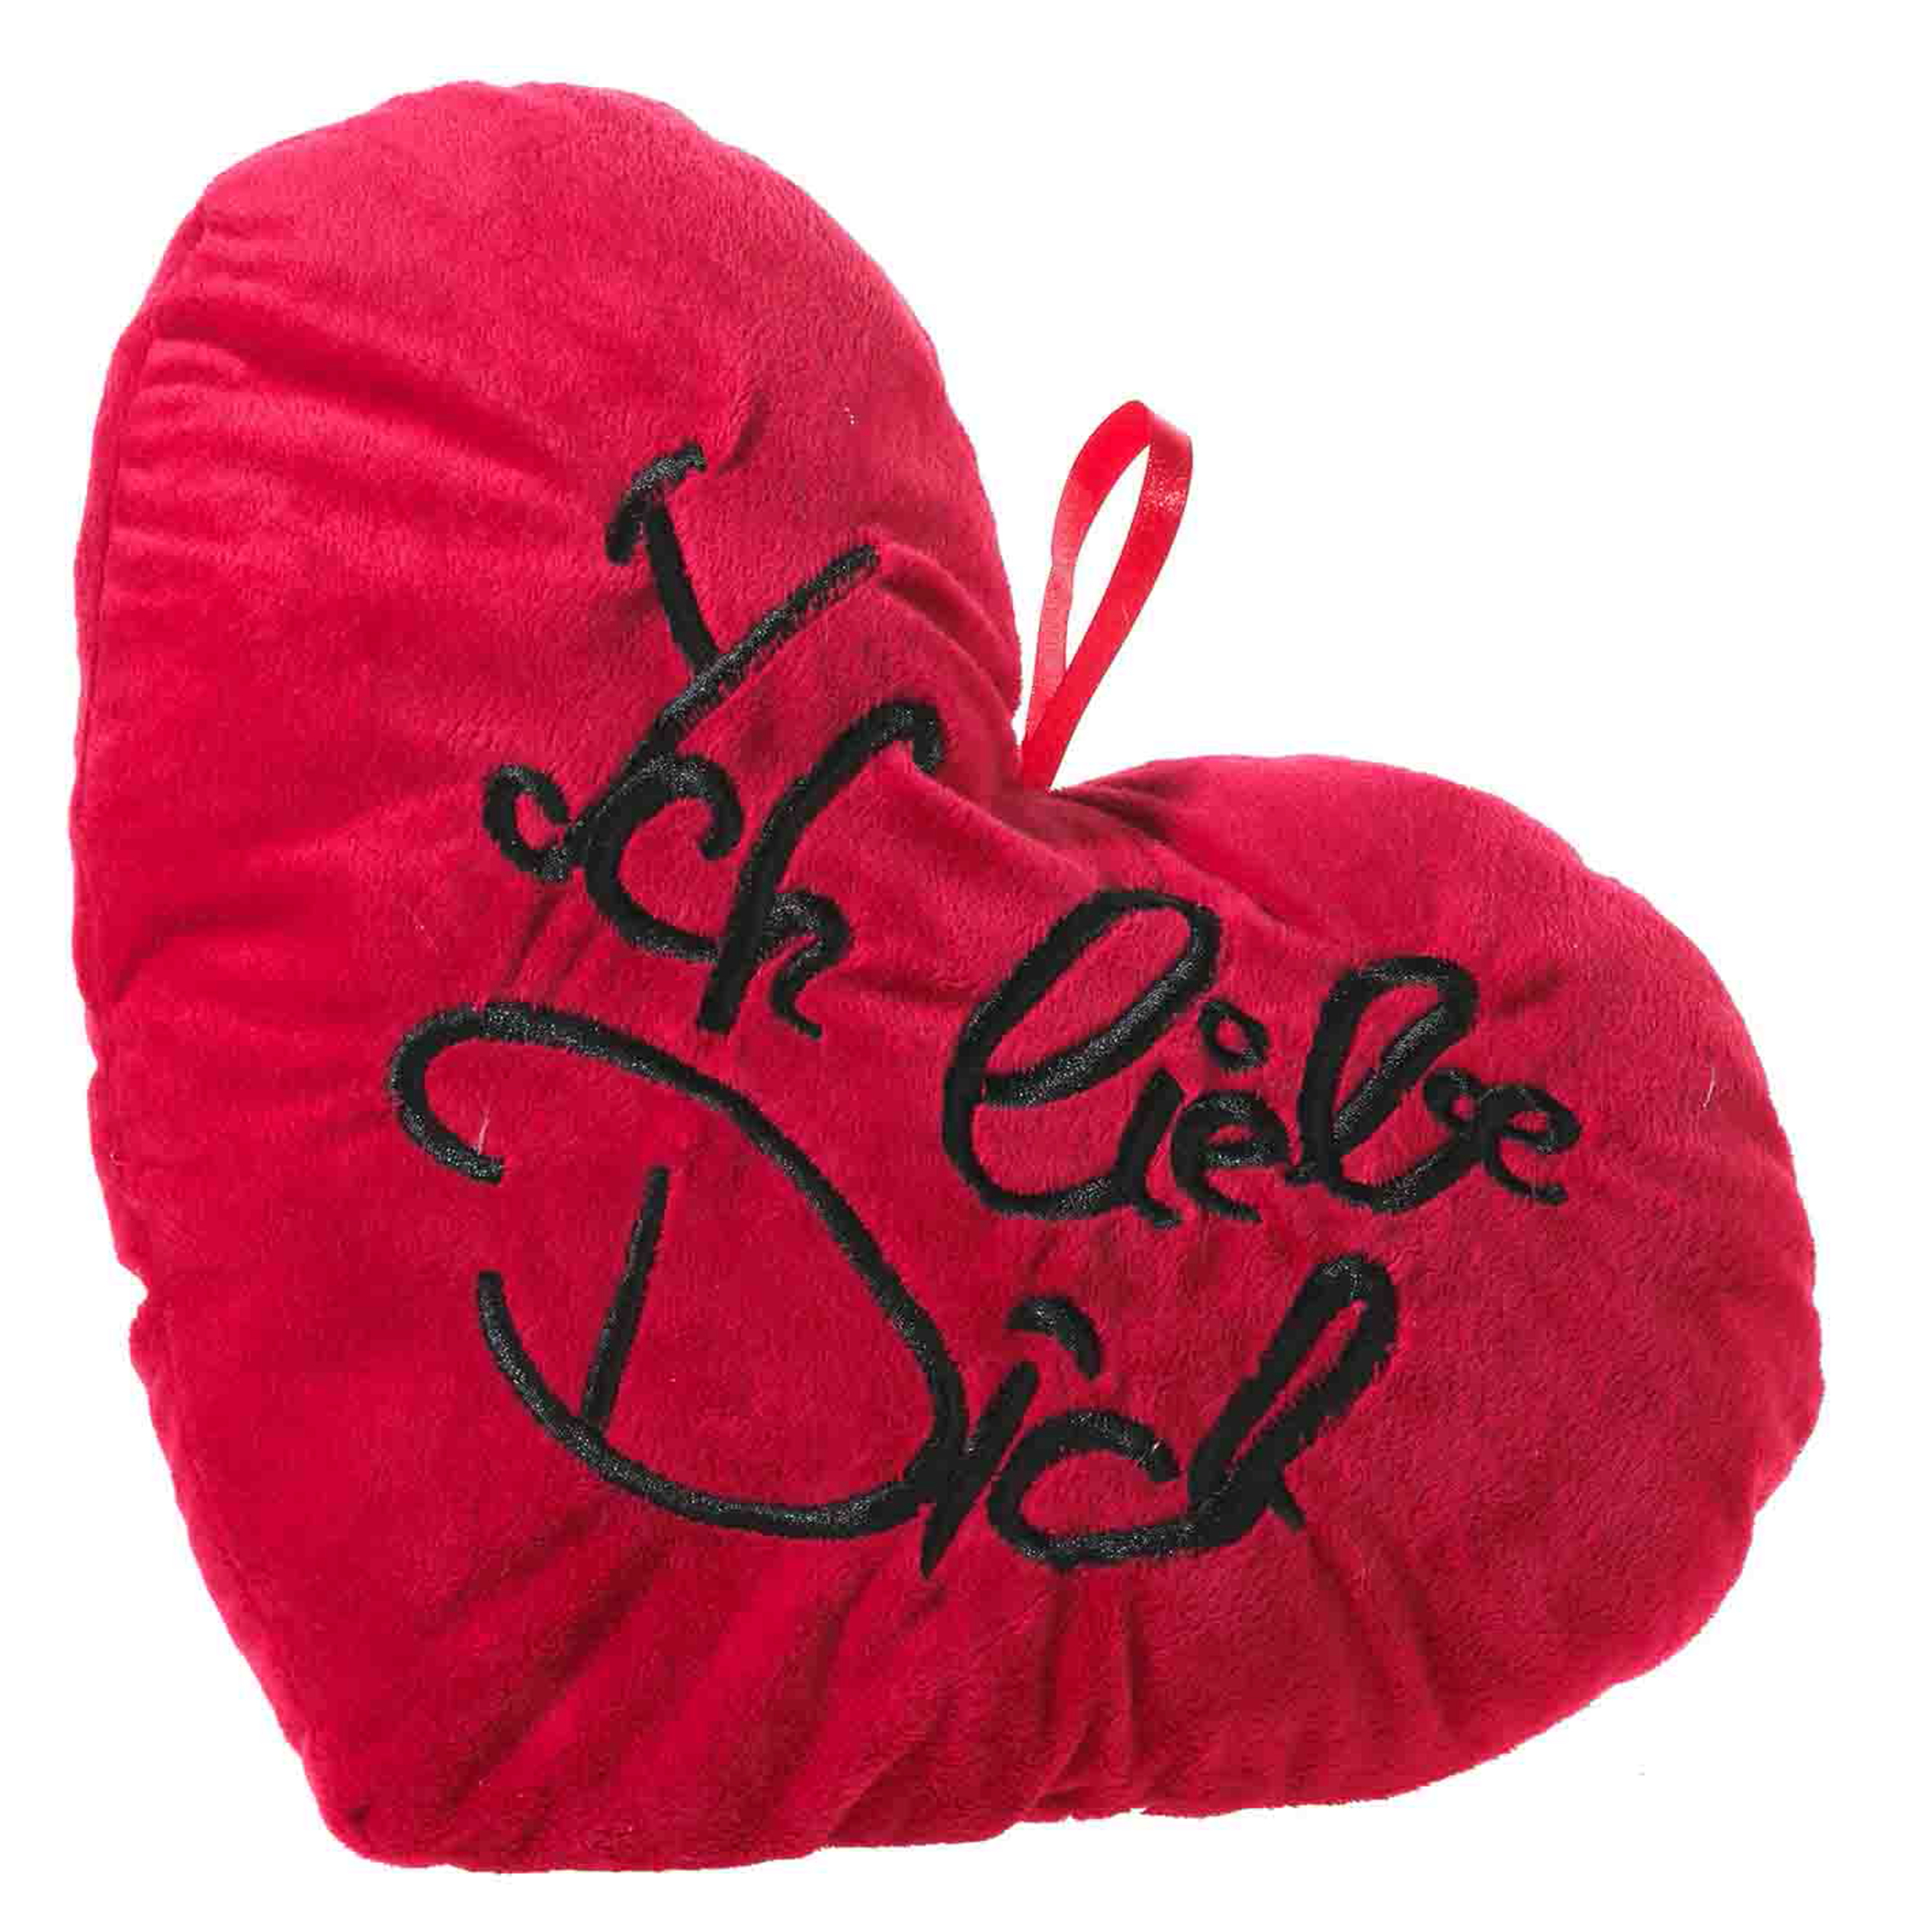 Heunec flauschiges, rotes Herz mit der Stickung "ich liebe dich"  in 38cm Größe